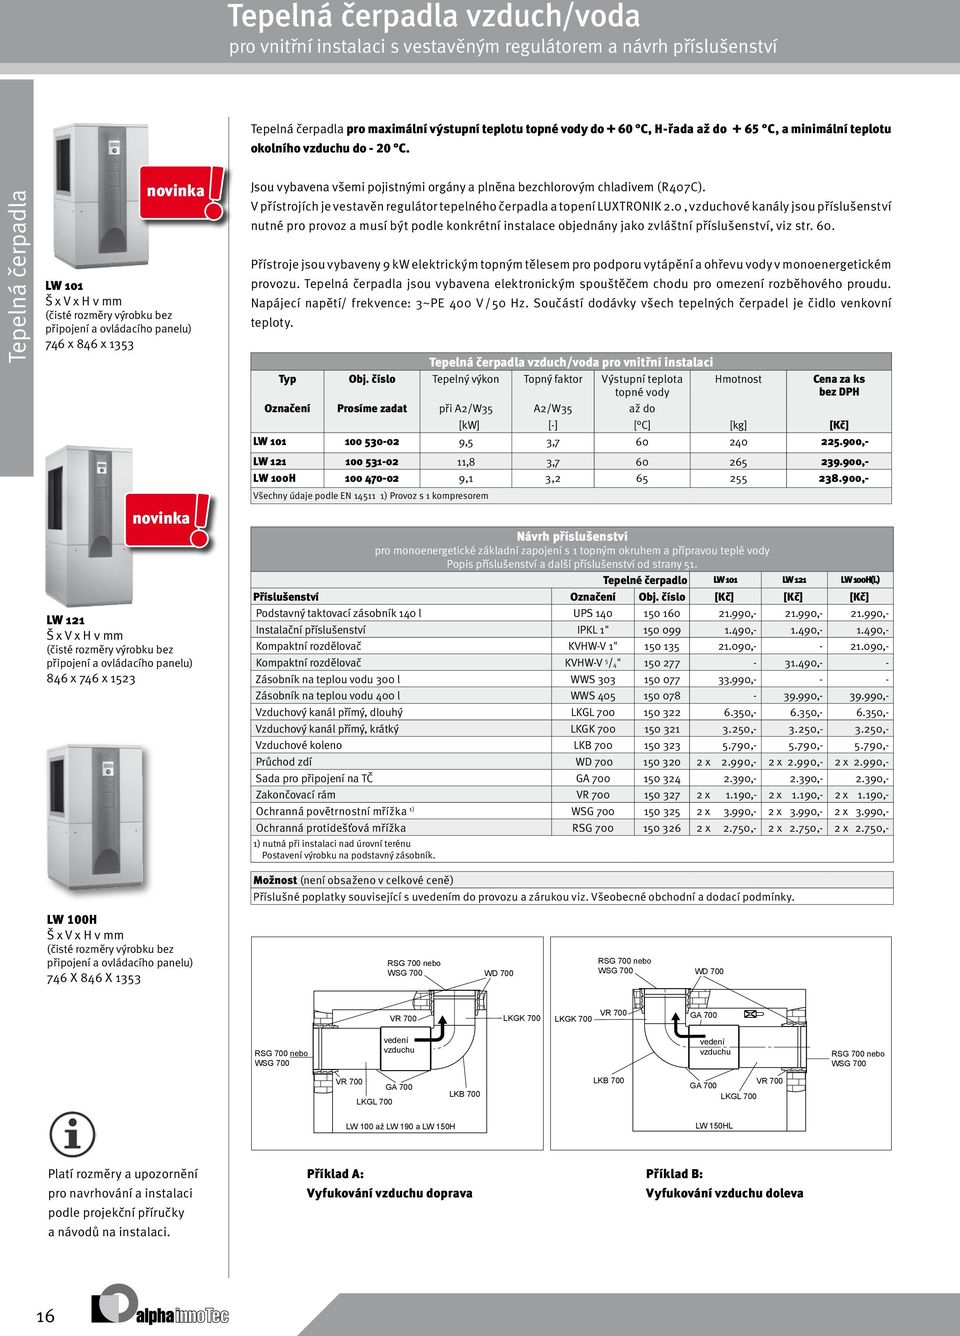 všemi pojistnými orgány a plněna bezchlorovým chladivem (R407C). V přístrojích je vestavěn regulátor tepelného čerpadla a topení LUXTRONIK 2.